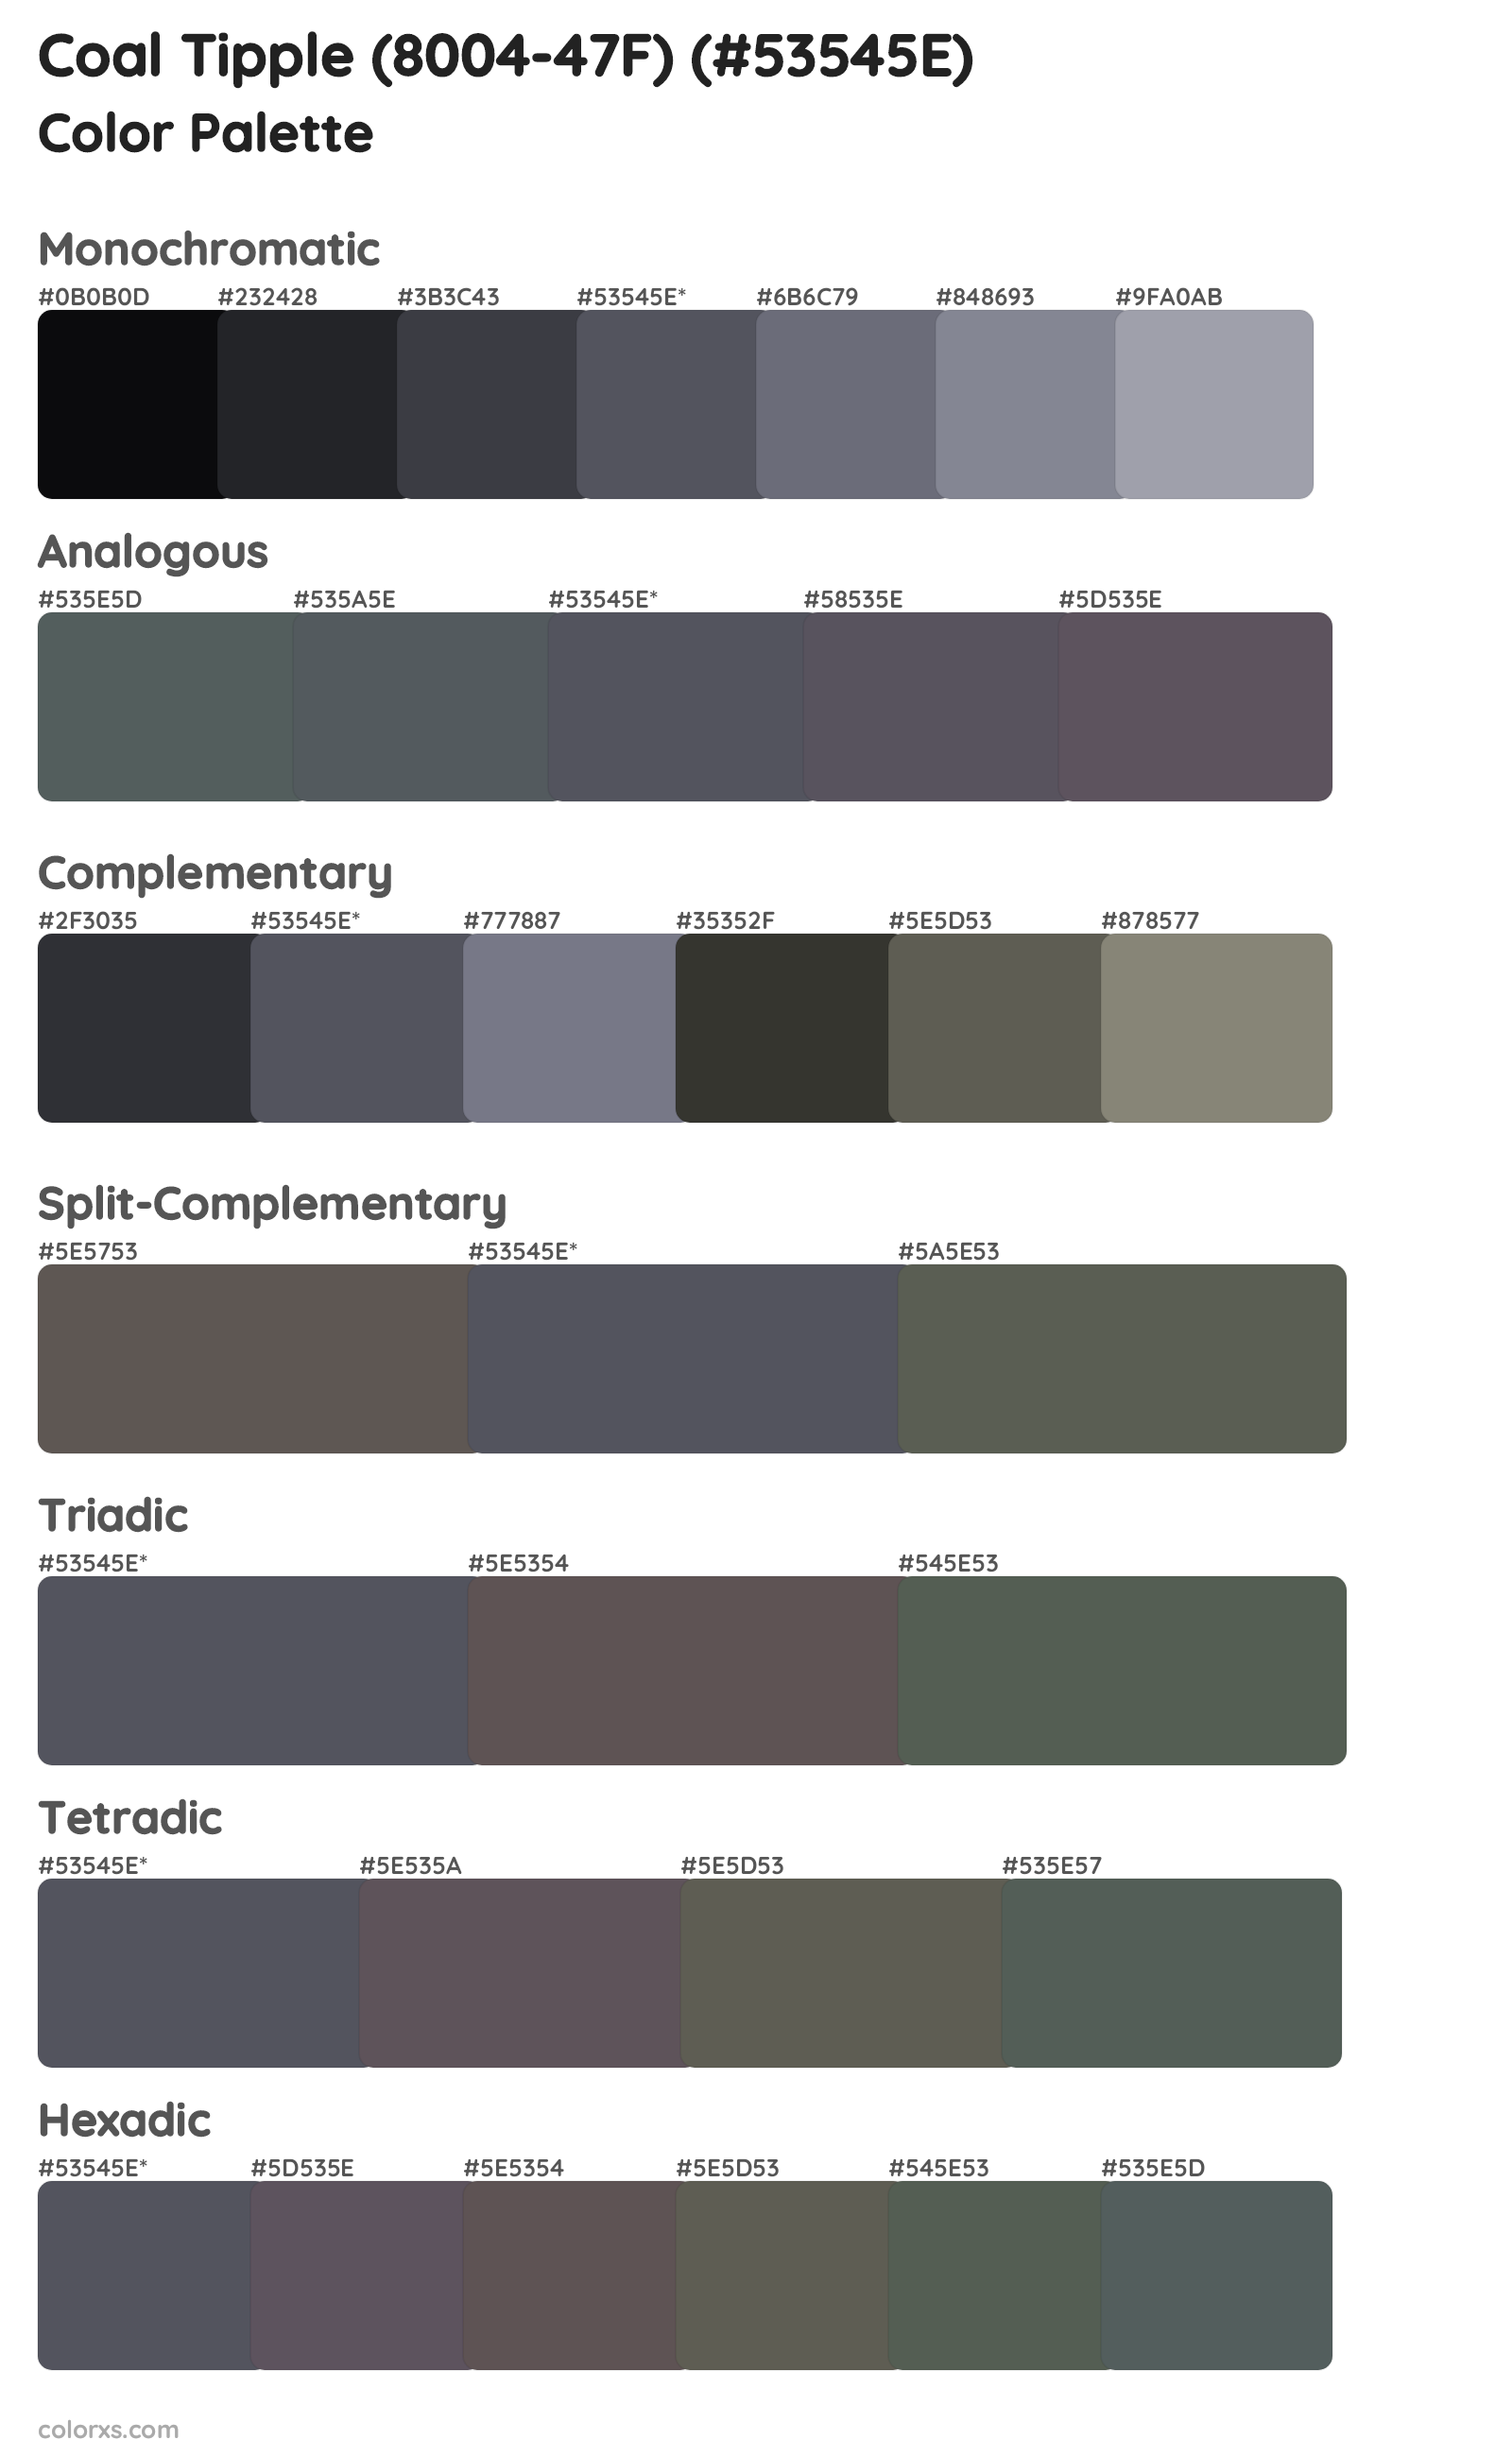 Coal Tipple (8004-47F) Color Scheme Palettes